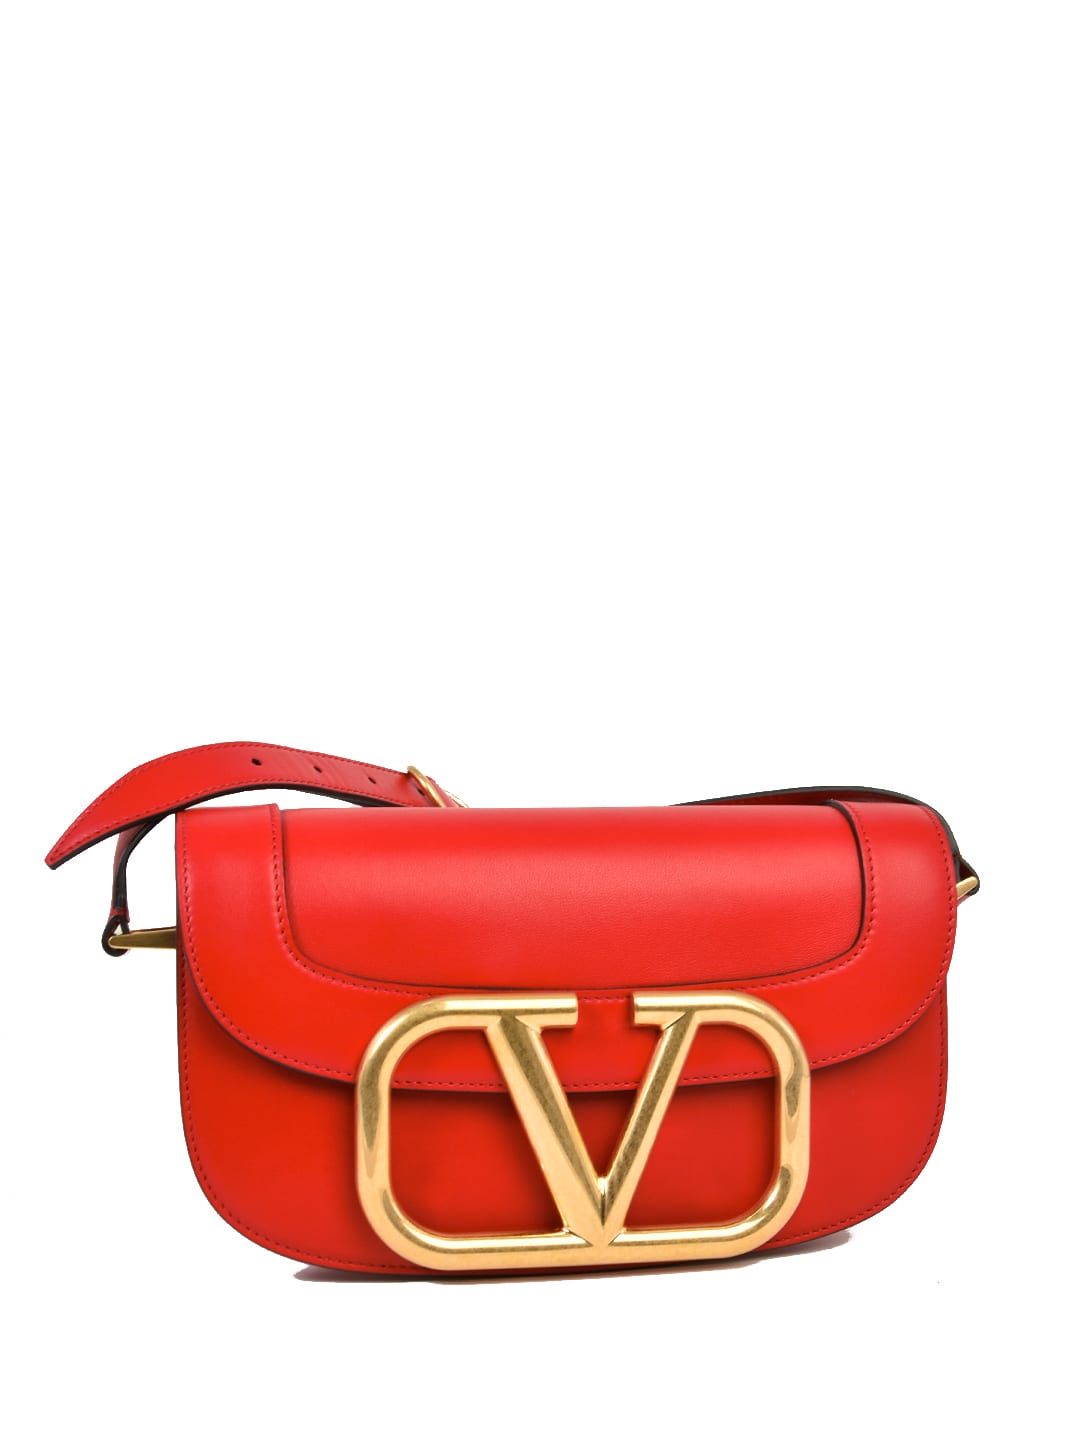 VALENTINO GARAVANI SUPERVEE SHOULDER BAG RED,11213375